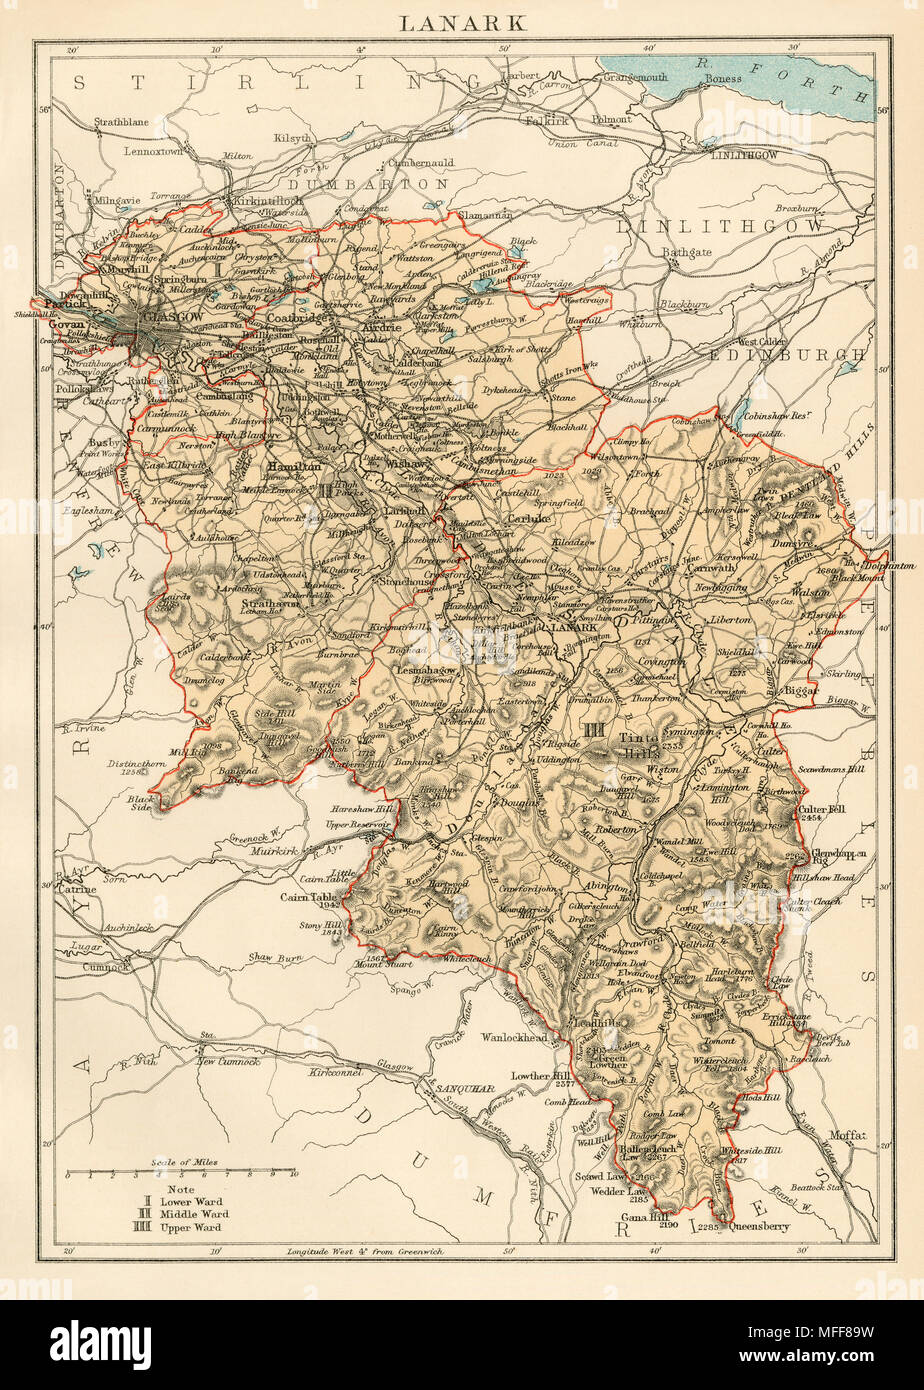 Schottland historische Landkarte Lithographie ca 1907 antike Karte Geographie